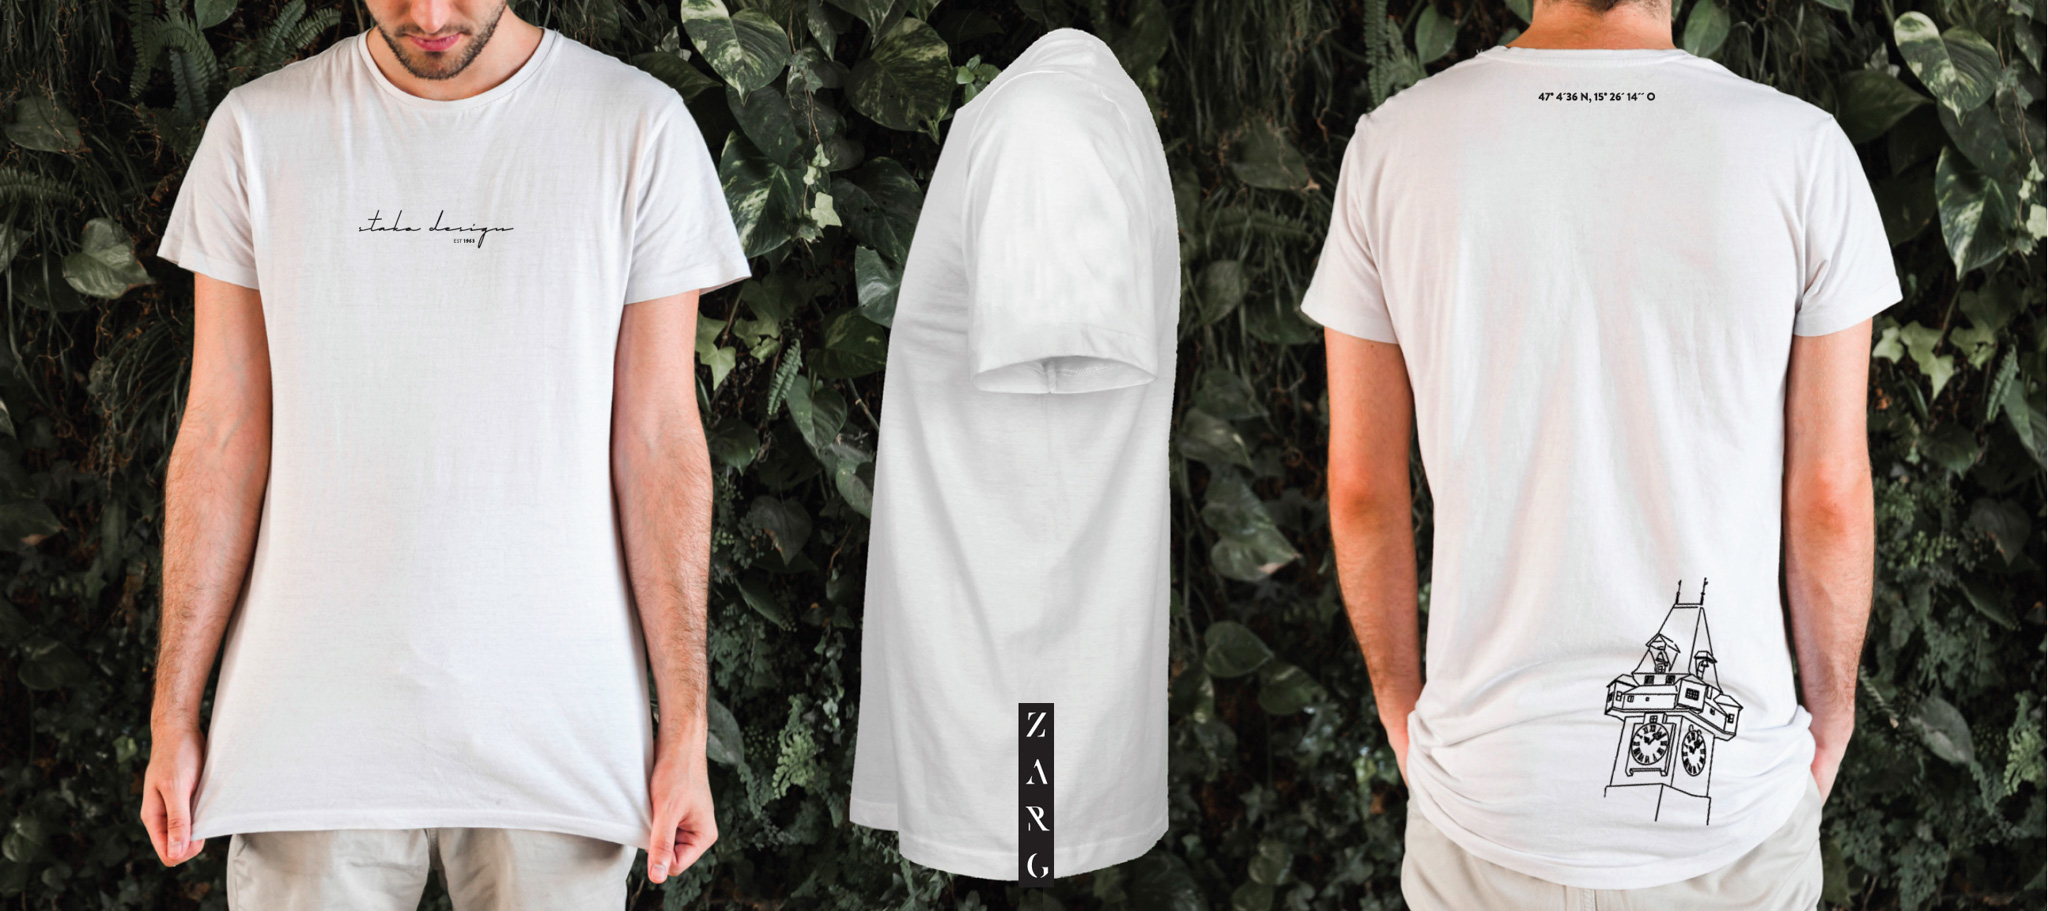 Das neue "Der Grazer" Design T-Shirt